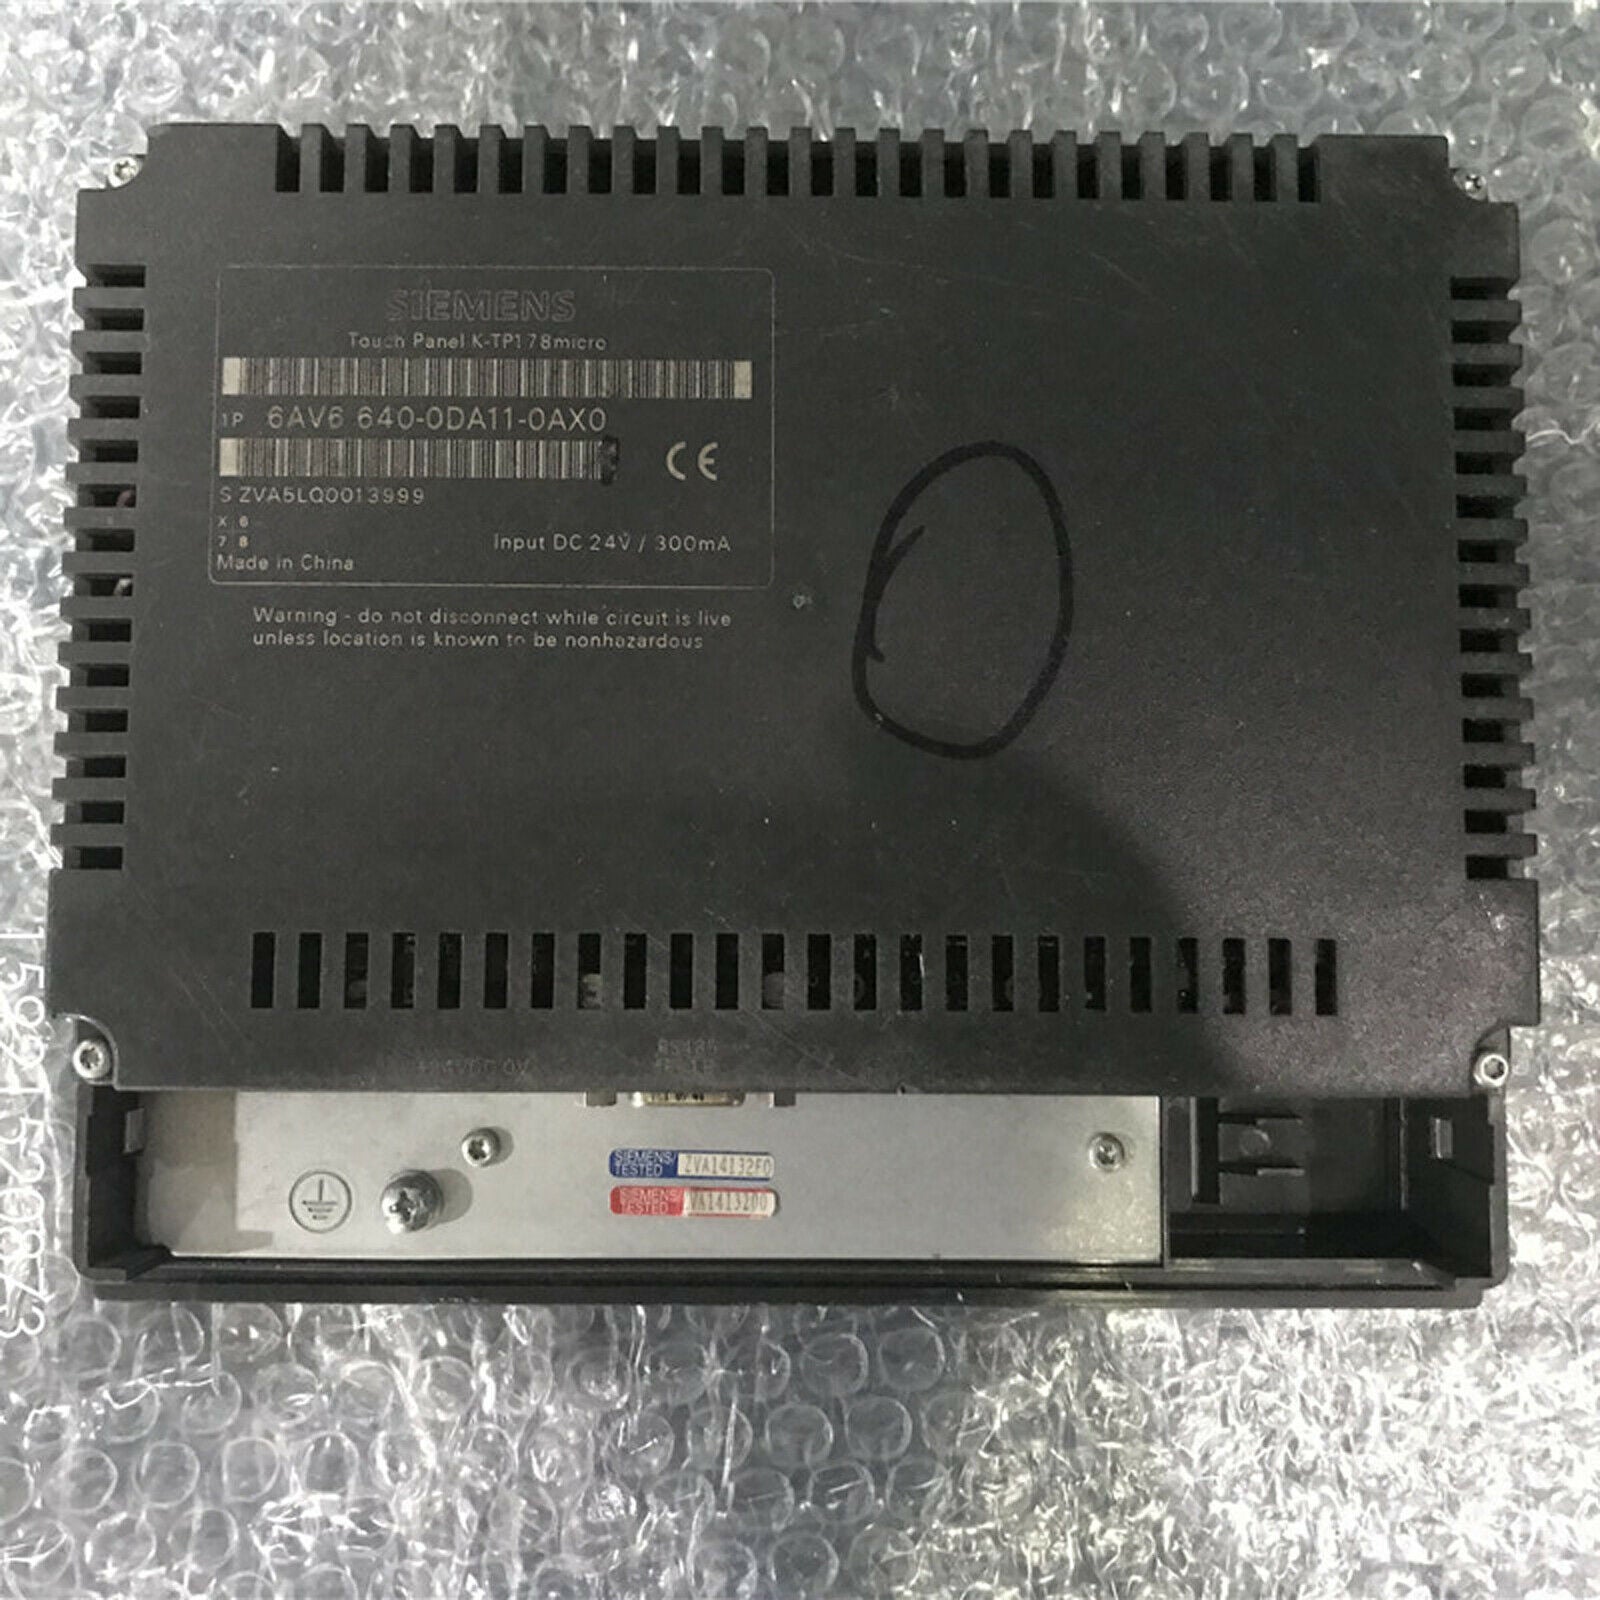 used  Siemens 6AV6 640-0DA11-0AX0 touch panel 6AV66400DA110AX0 Tested Good